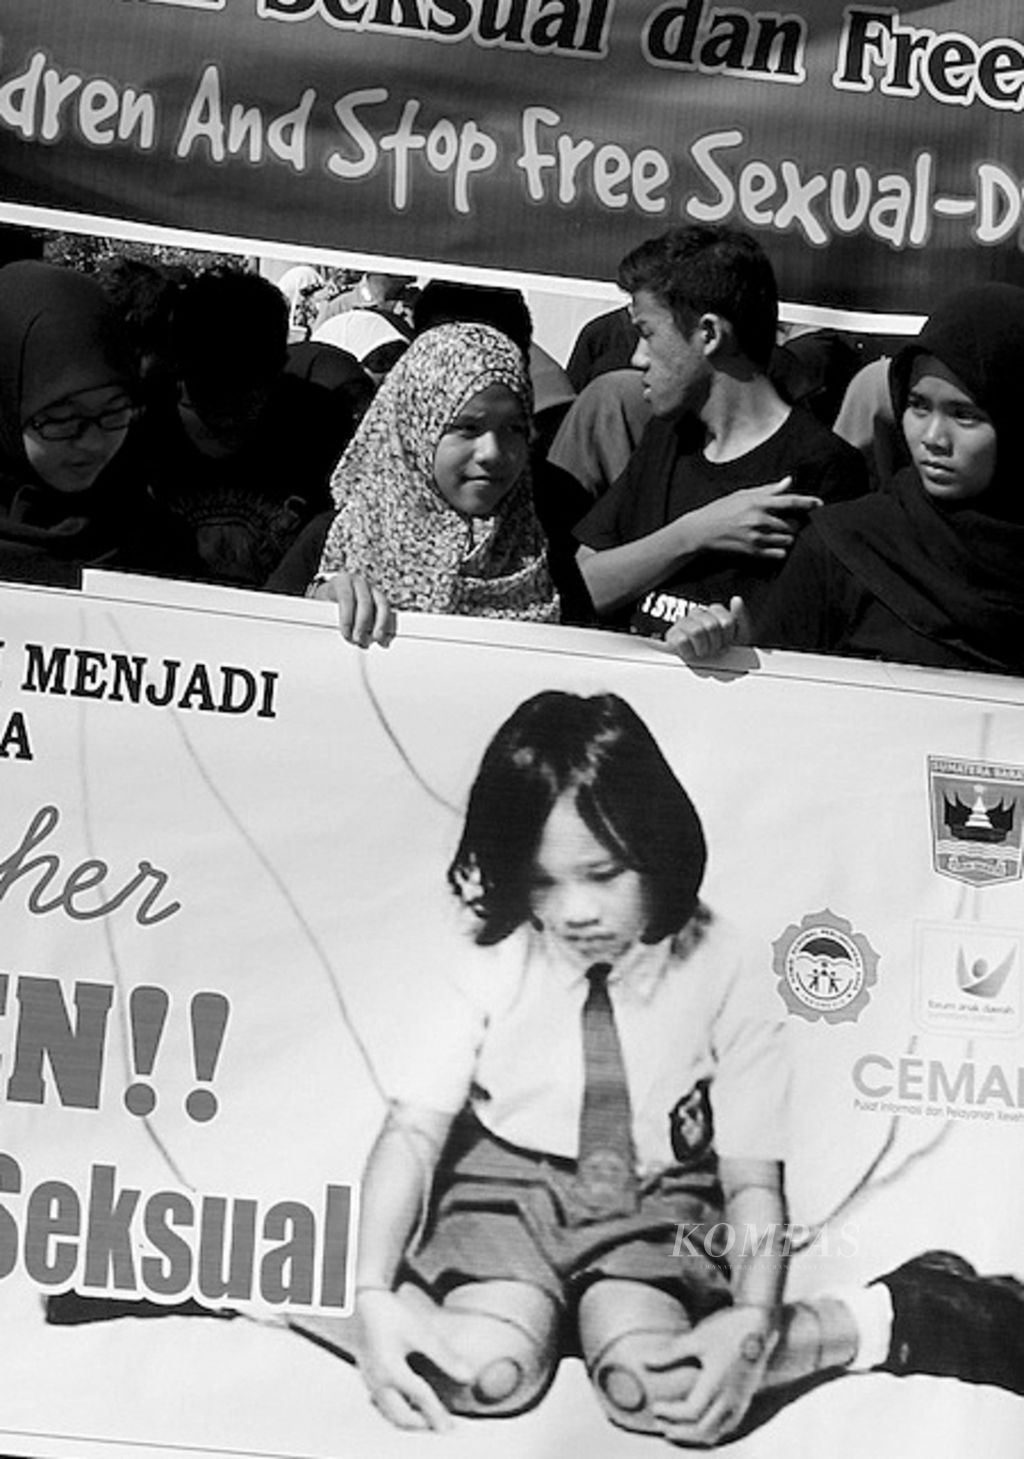 Pelajar dari berbagai wilayah di Sumatera Barat menggelar aksi solidaritas menyikapi maraknya kasus kekerasan seksual terhadap anak di Indonesia di kawasan Jalan Sudirman Kota Padang, Minggu (25/5/2014). Lewat aksinya, mereka mengajak warga untuk ambil bagian dalam upaya perlindungan terhadap anak-anak dari tindakan asusila.